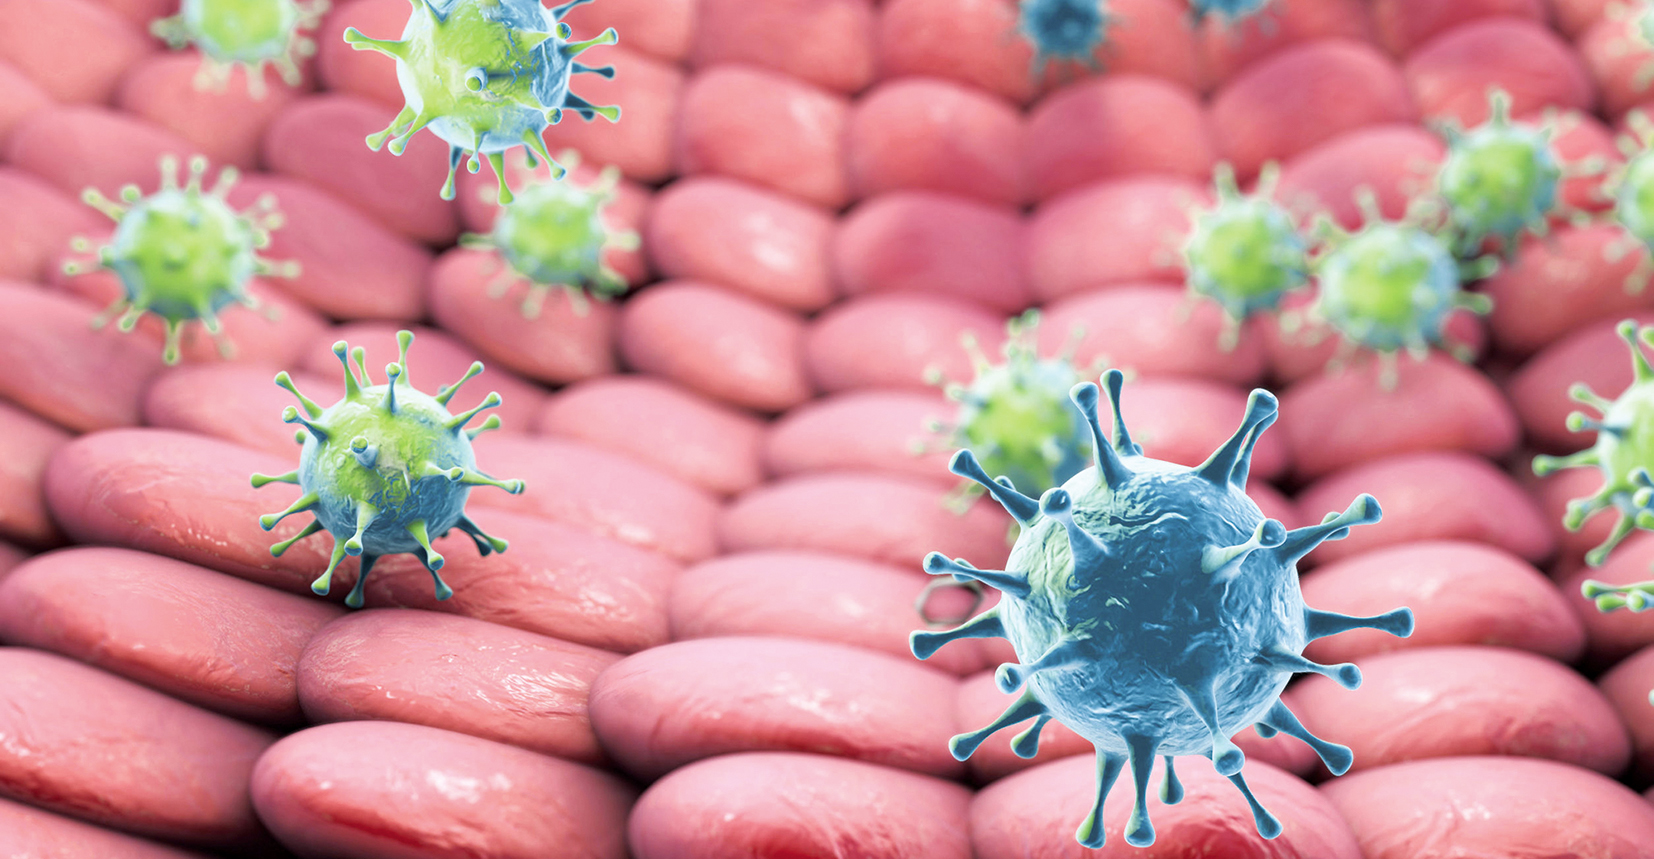 Attualità sui virus oncogeni e la immunoterapia dei tumori